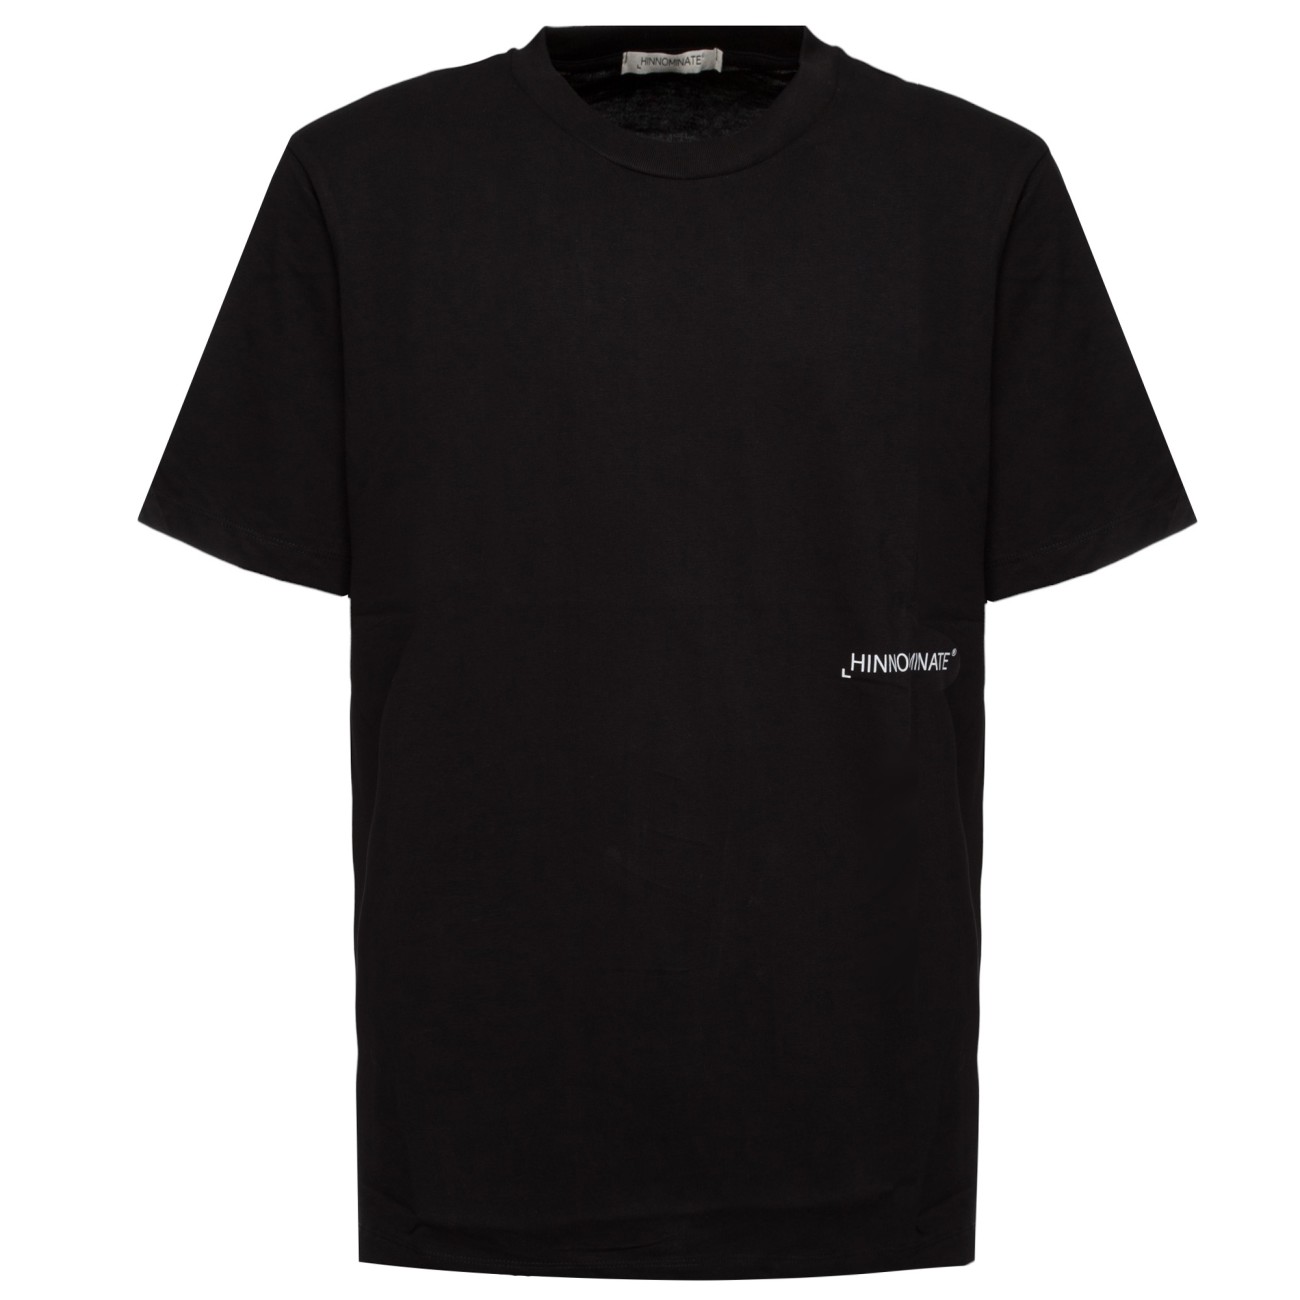 Hinnominate black t-shirt